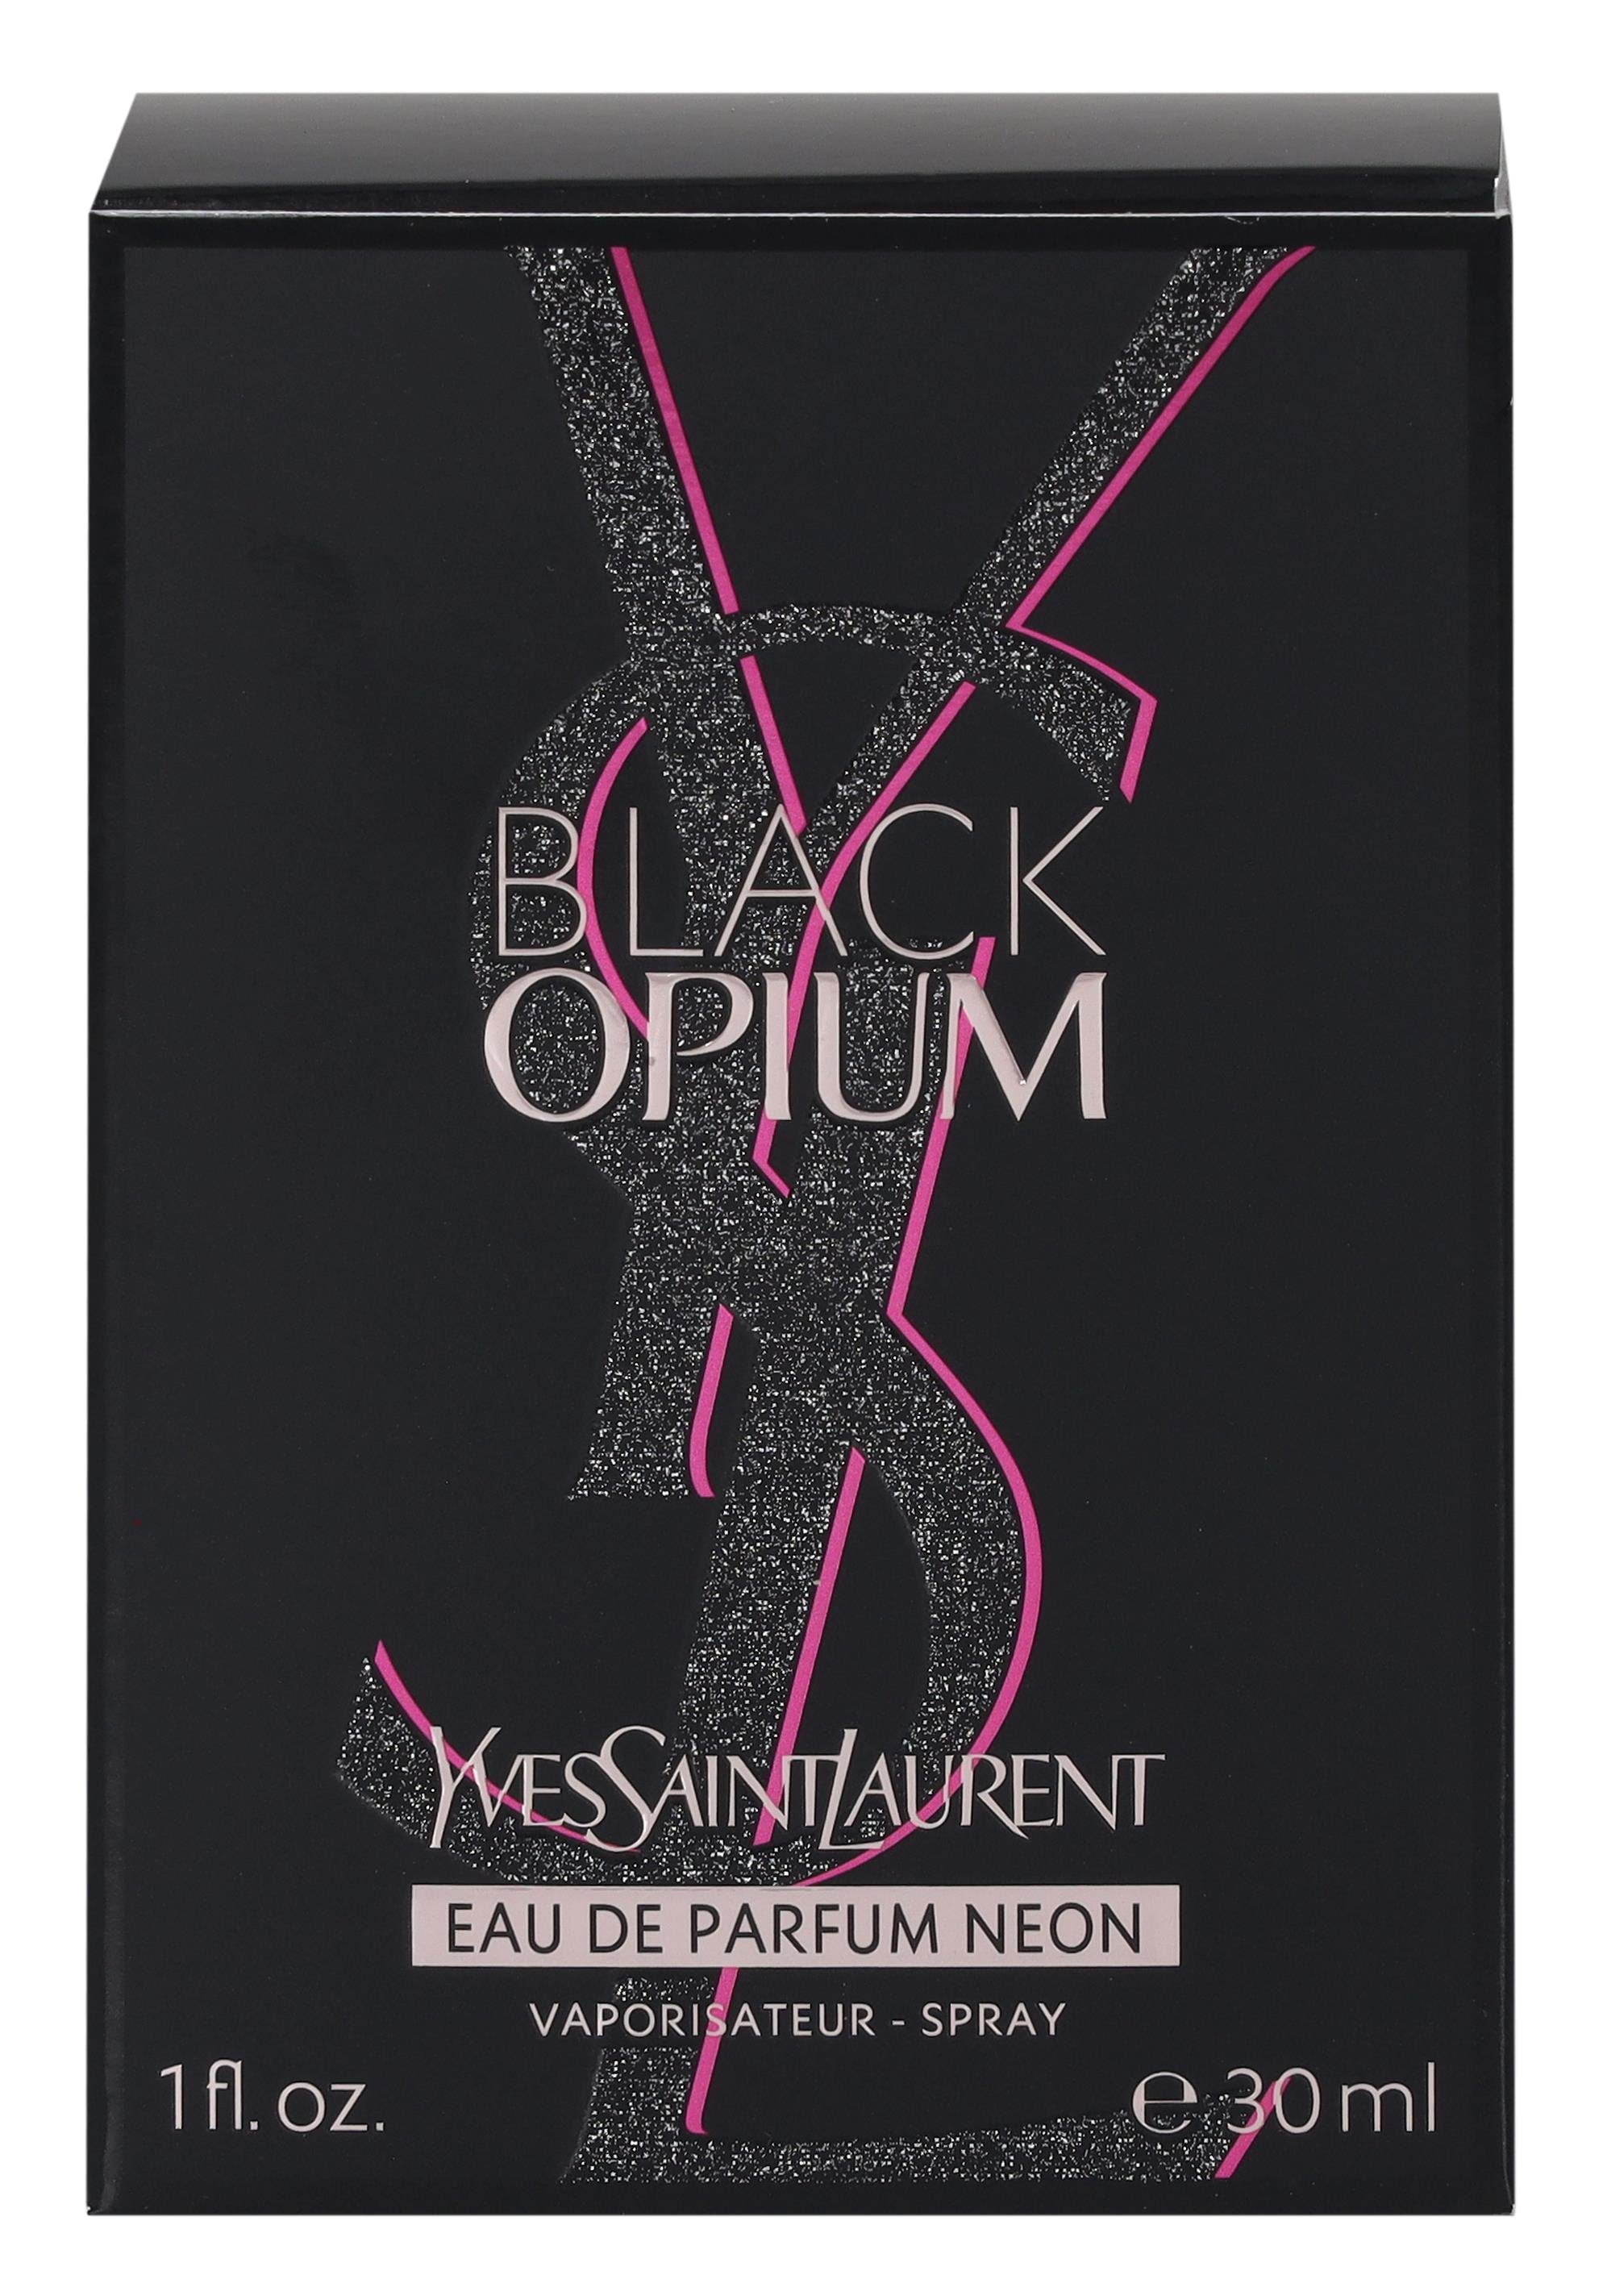 Parfum LAURENT SAINT Opium Yves YVES Parfum Eau Black Saint de Neon Eau de Laurent